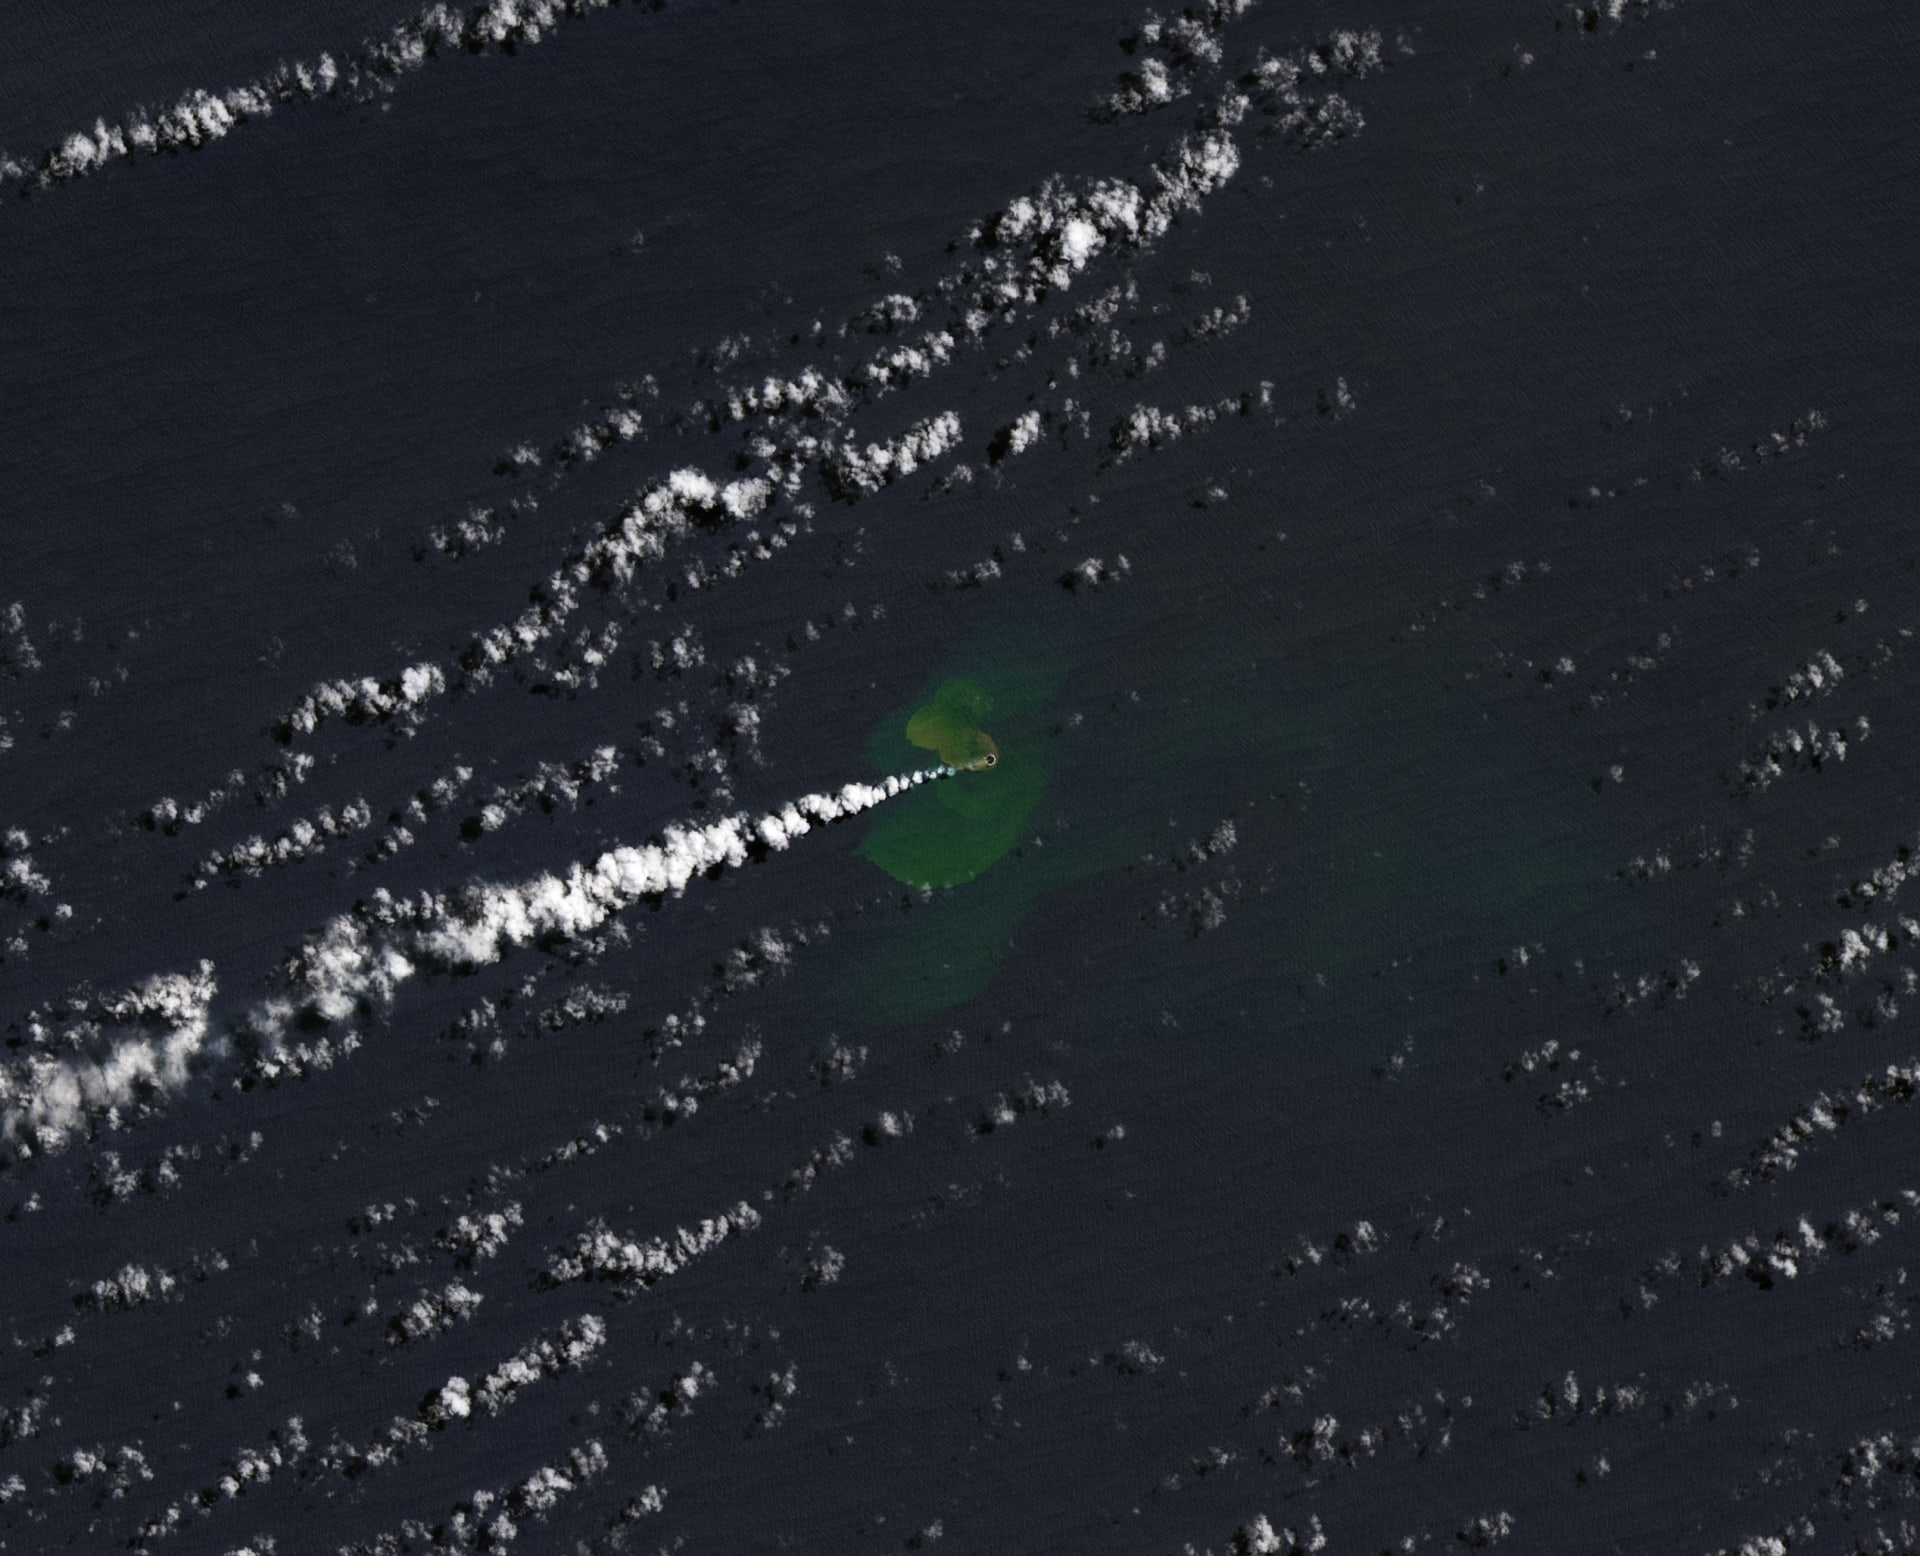 جزيرة جديدة تظهر في المحيط الهادئ بعد ثوران بركان تحت الماء